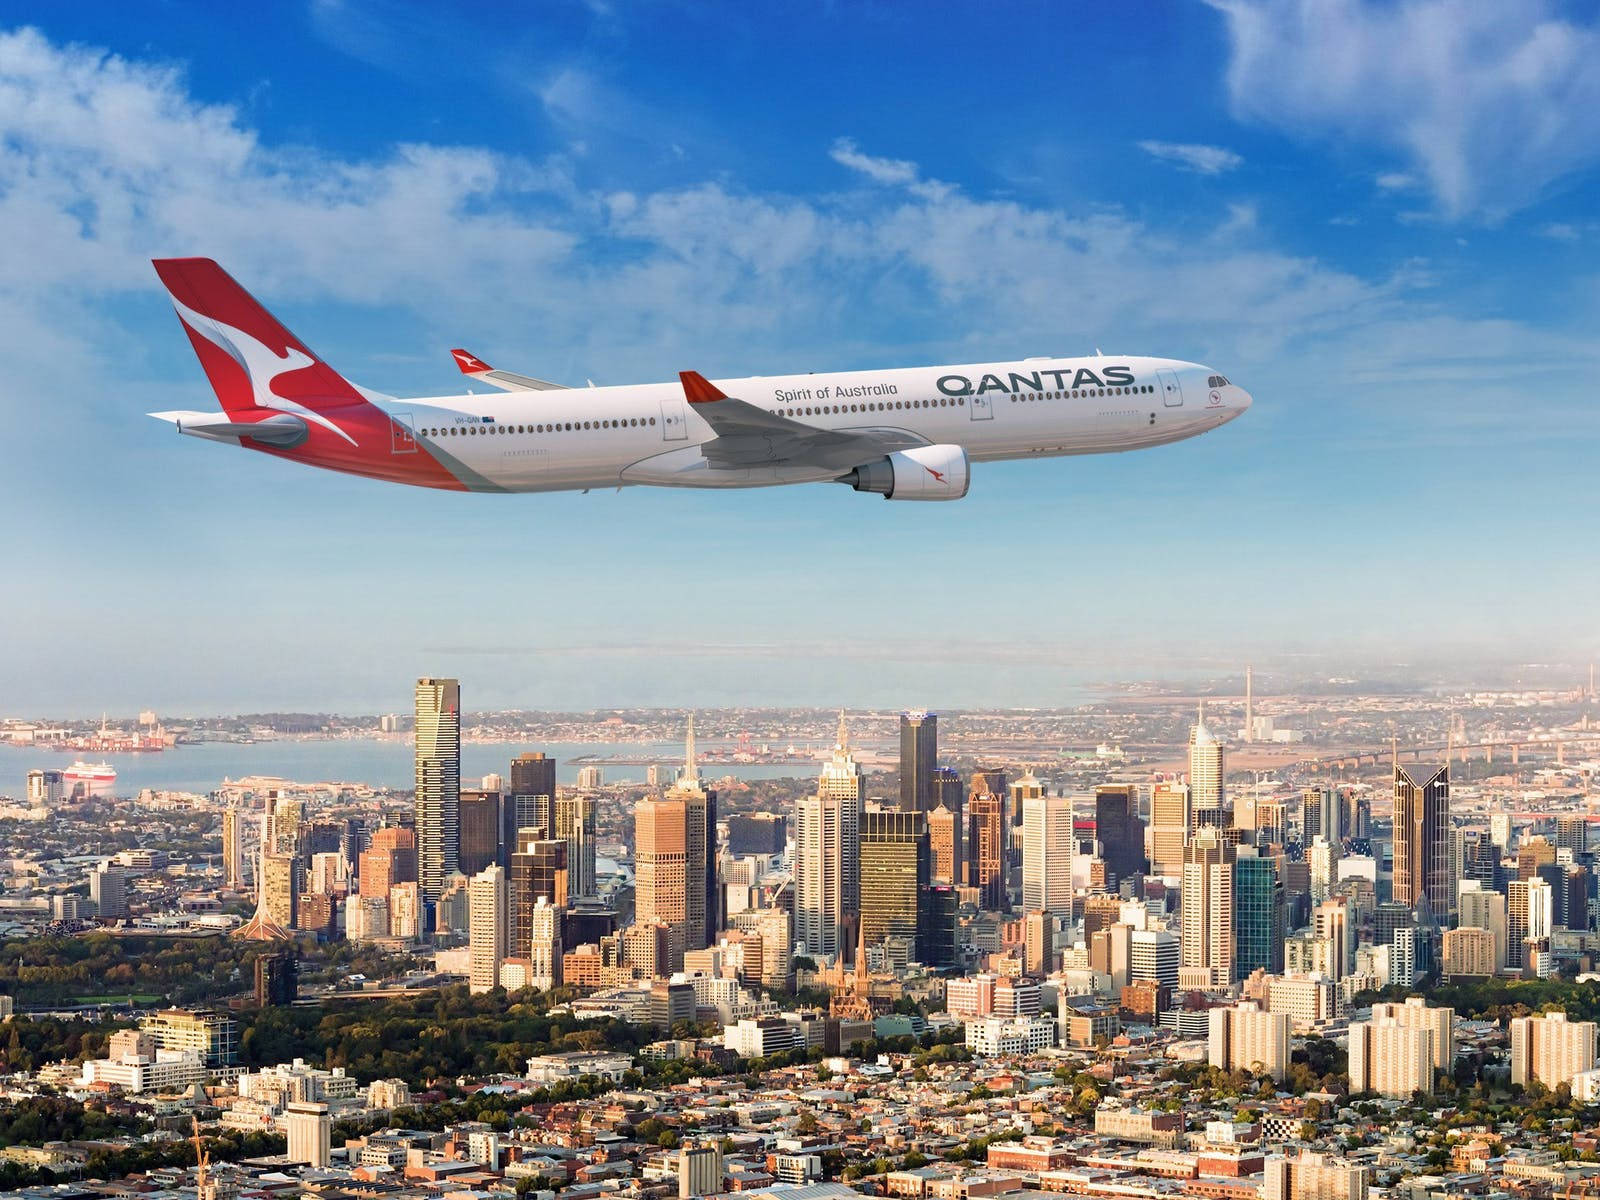 Qantaspassagierflugzeug Über Der Stadt Wallpaper